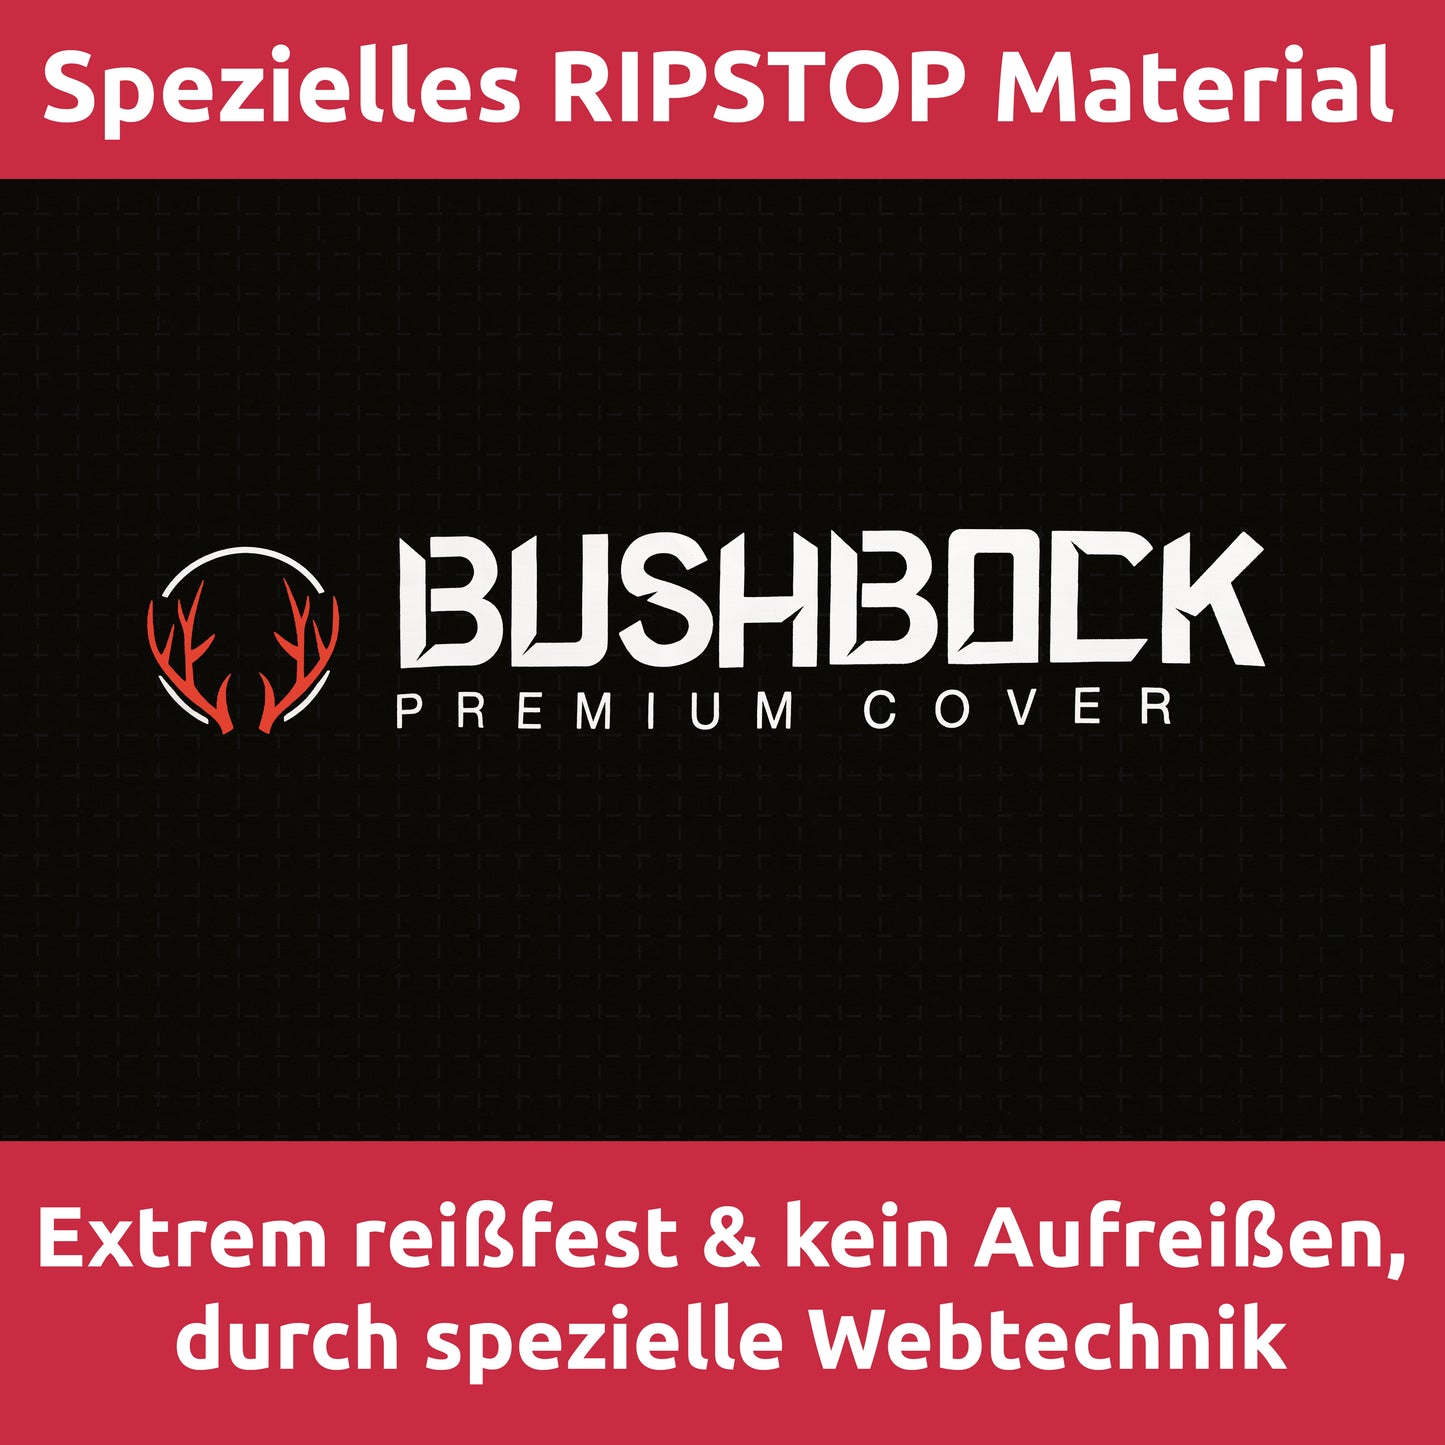 BUSHBOCK® Premium Motorrad/Motorroller Abdeckplane mit Ripstop Struktur - Kein Aufreißen mehr! - Outdoor/Indoor